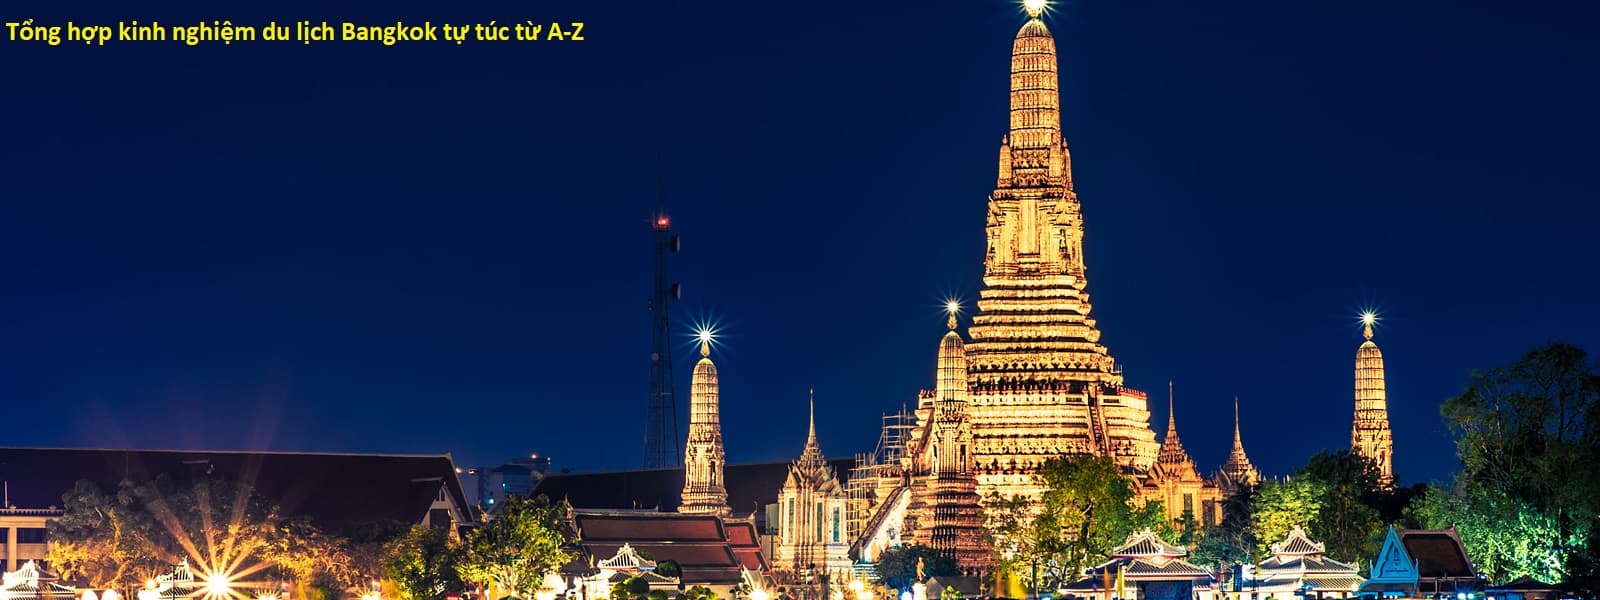 Kinh nghiệm du lịch Bangkok 2022: đi đâu, ăn gì, giá vé? - Thông tin, hướng dẫn, kinh nghiệm du lịch Thái Lan